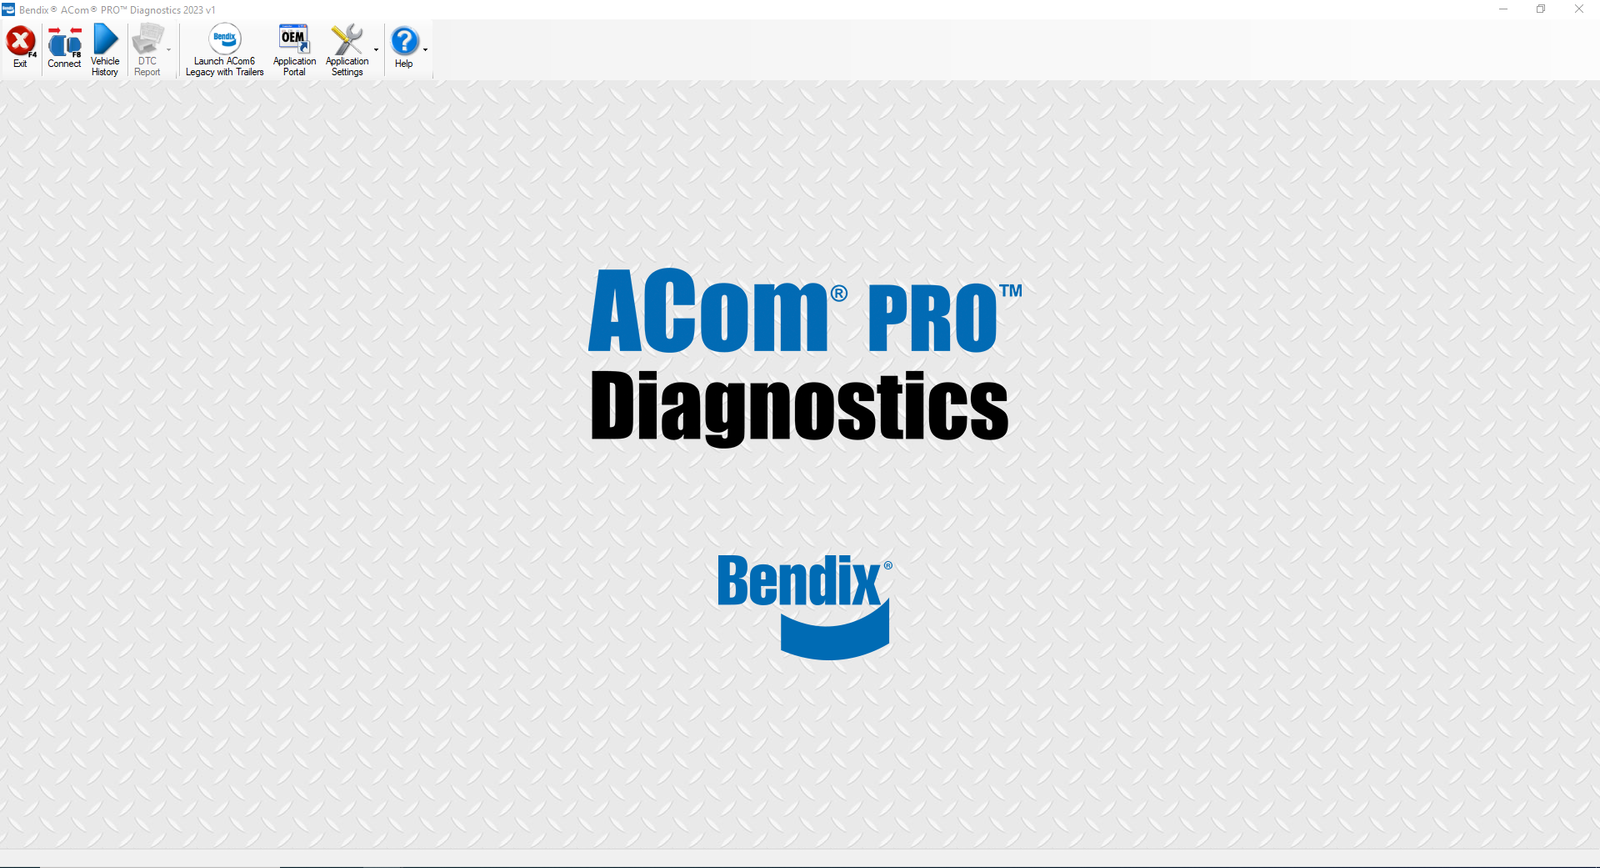 Bendix Acom Pro 2023 V1 diagnostic software 1PC